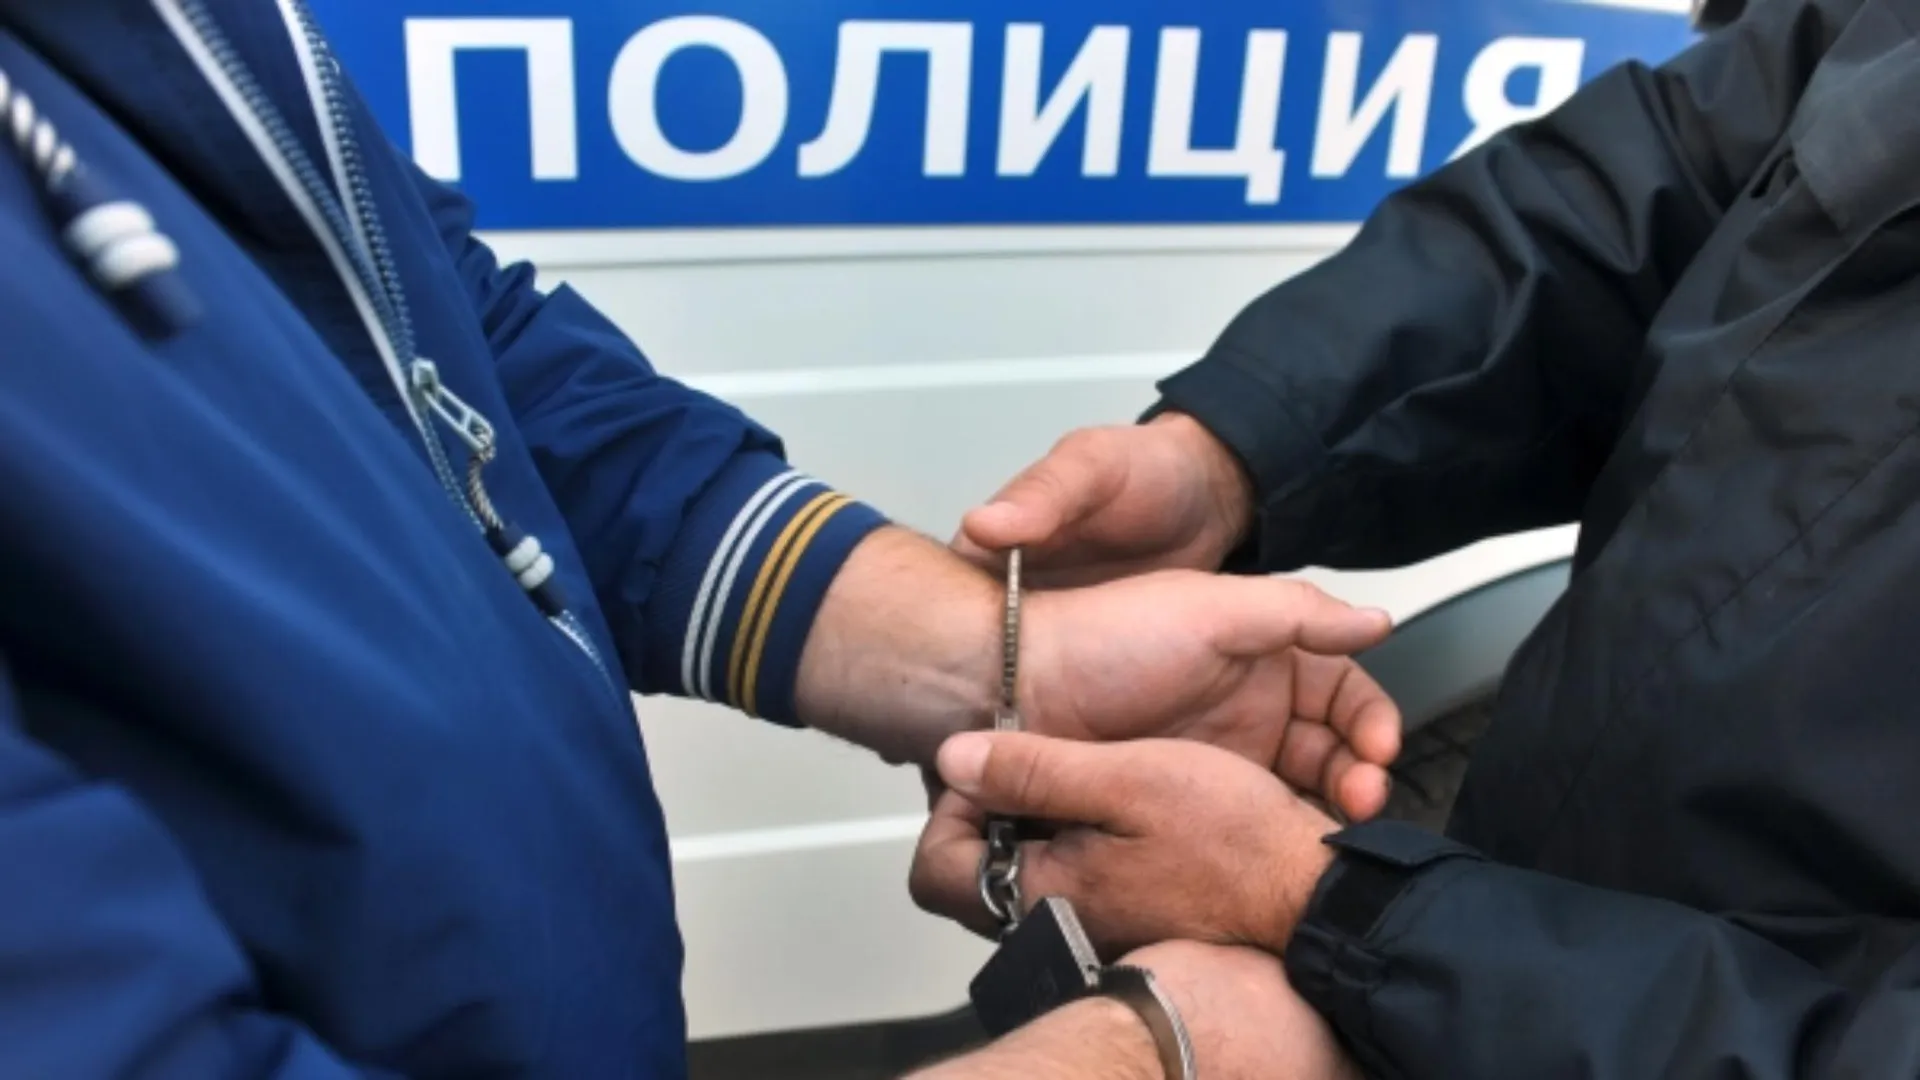 Курьера, причастного к мошенничеству в отношении пенсионеров, задержали в Подмосковье